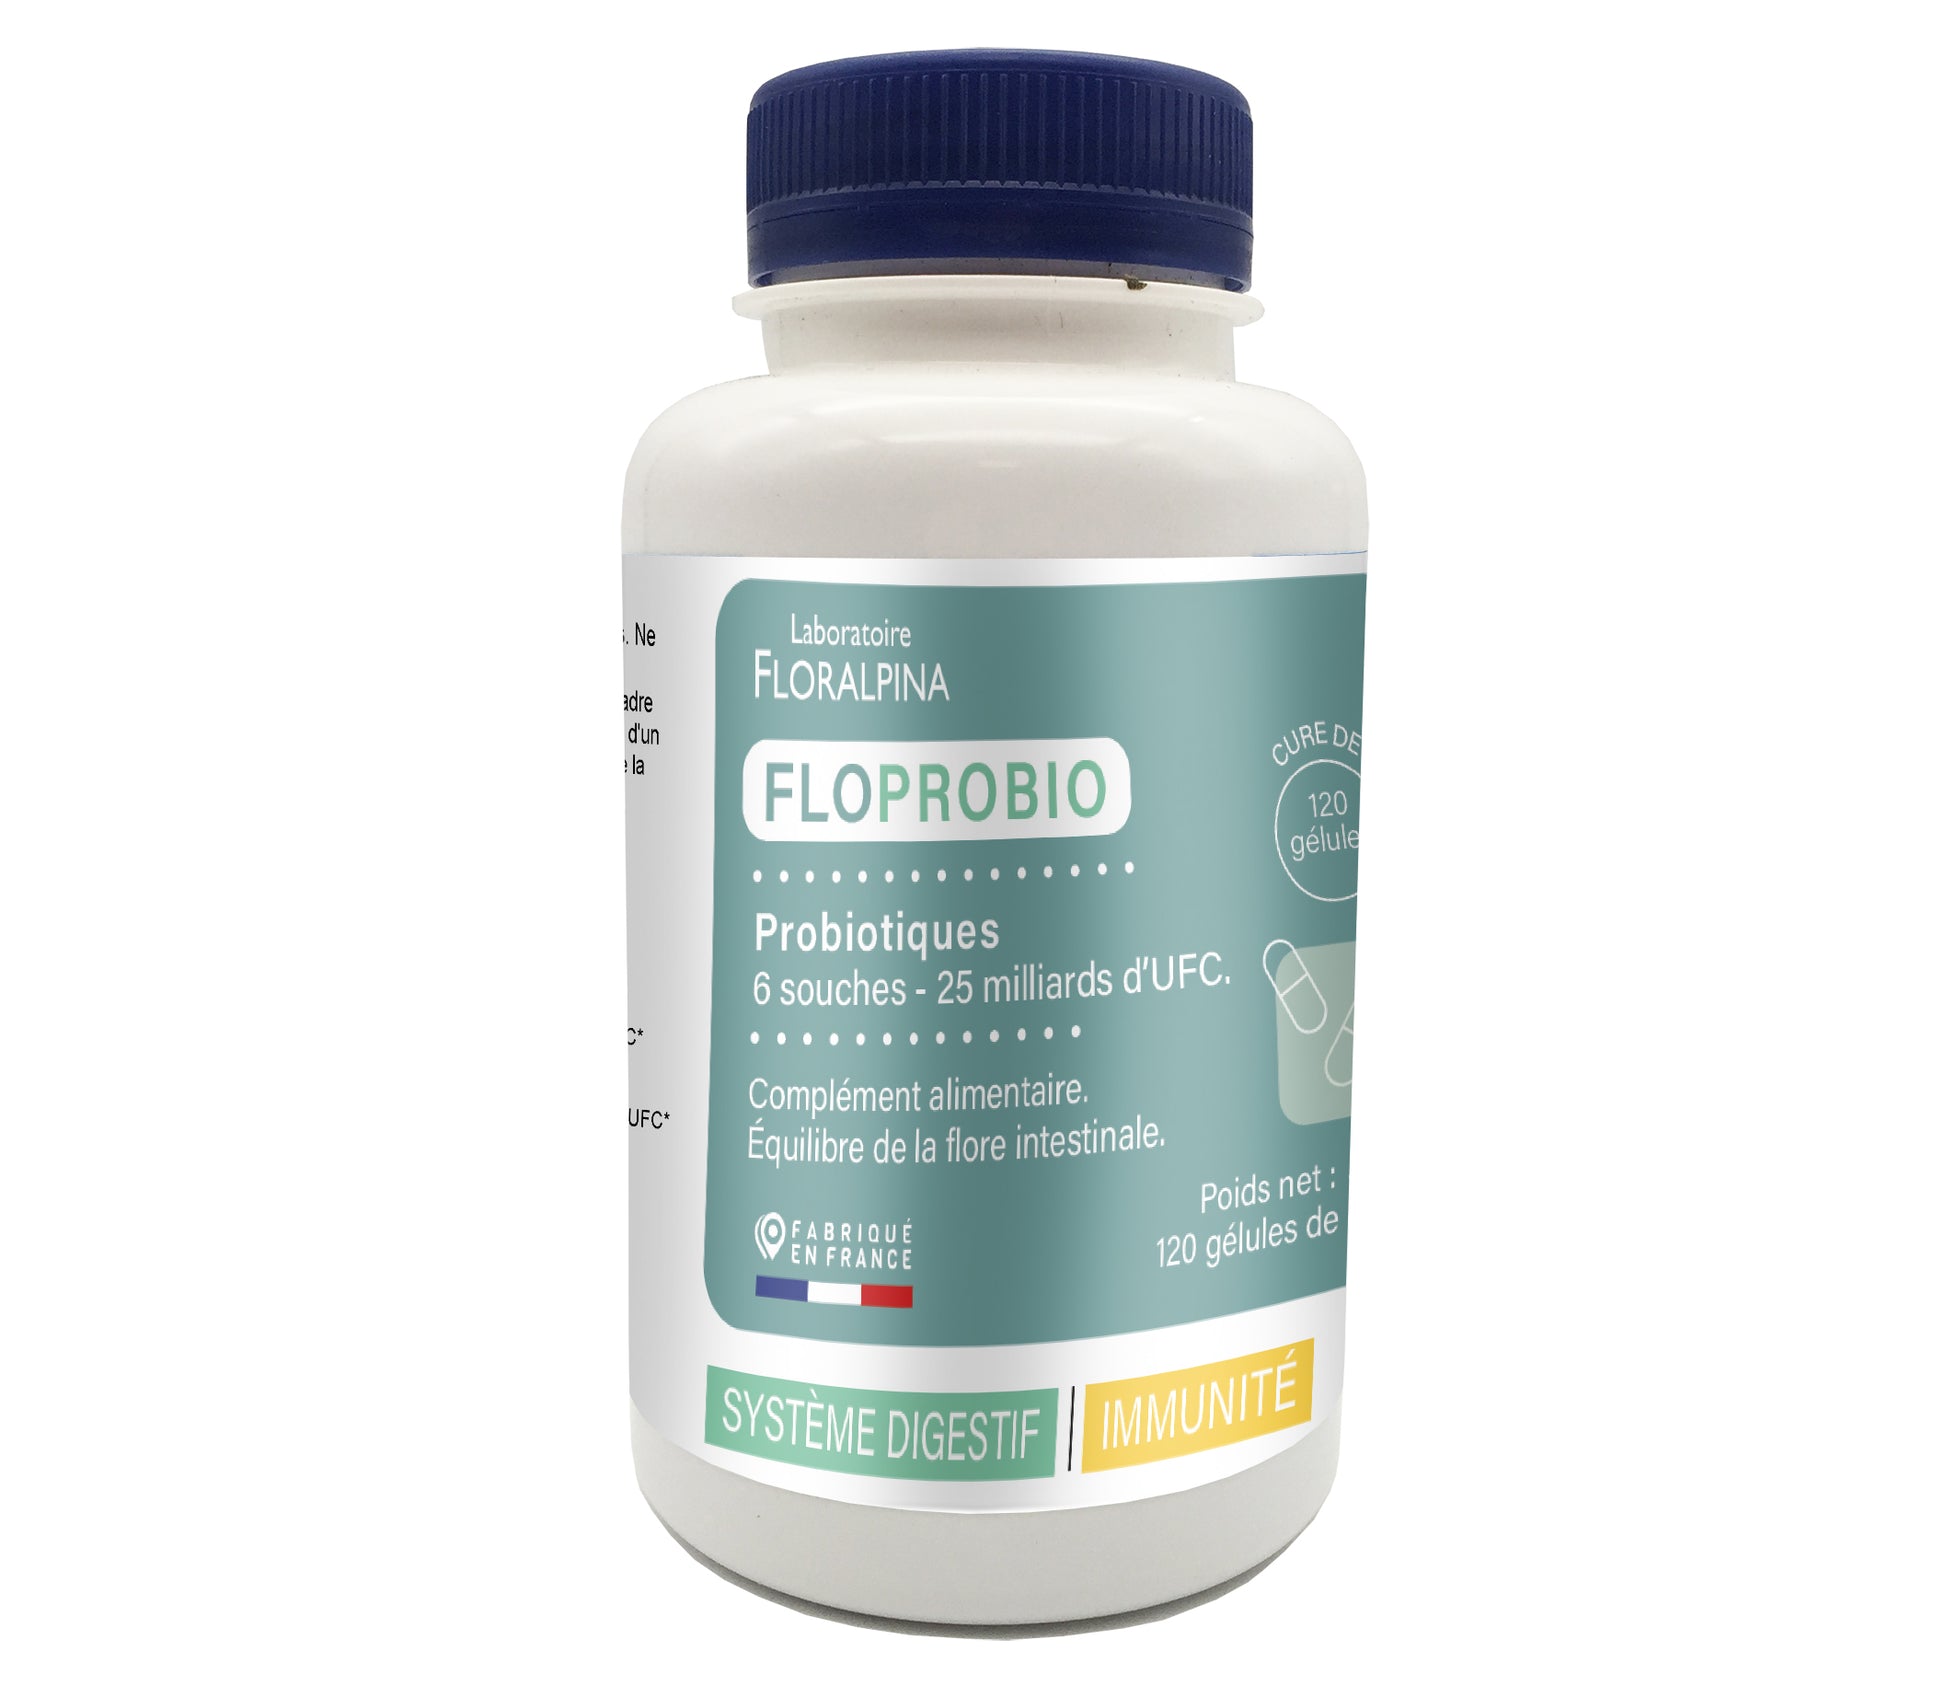 Floprobio (probiotiques) - 6 souches - 25 miliards d'UFC - Rue Des Plantes